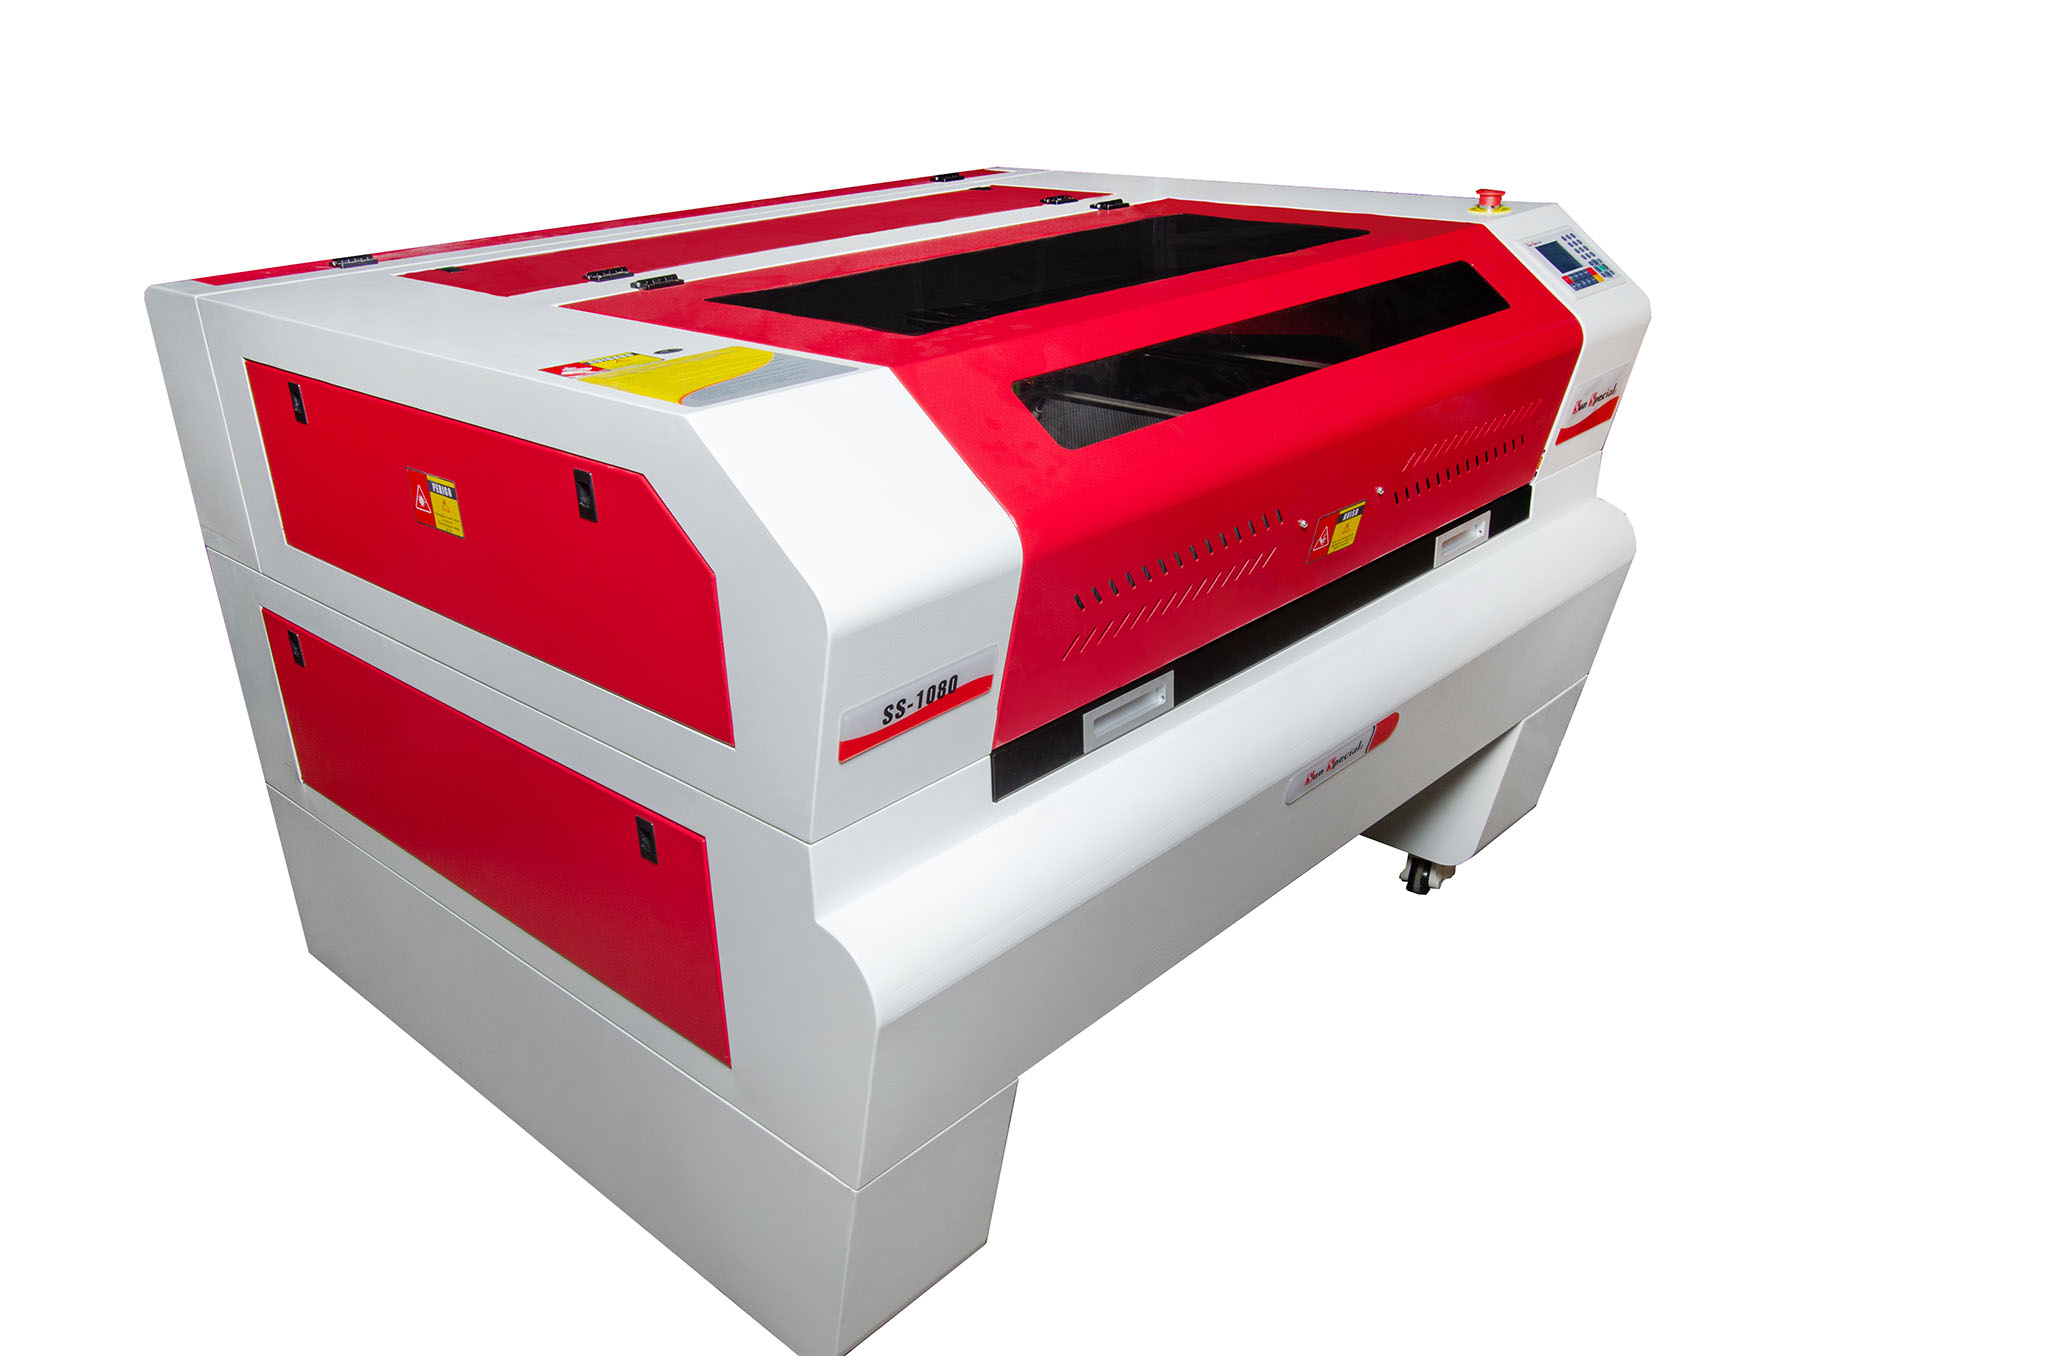 Máquina de Corte e Gravação a Laser 220v SS1290 - Sun Special